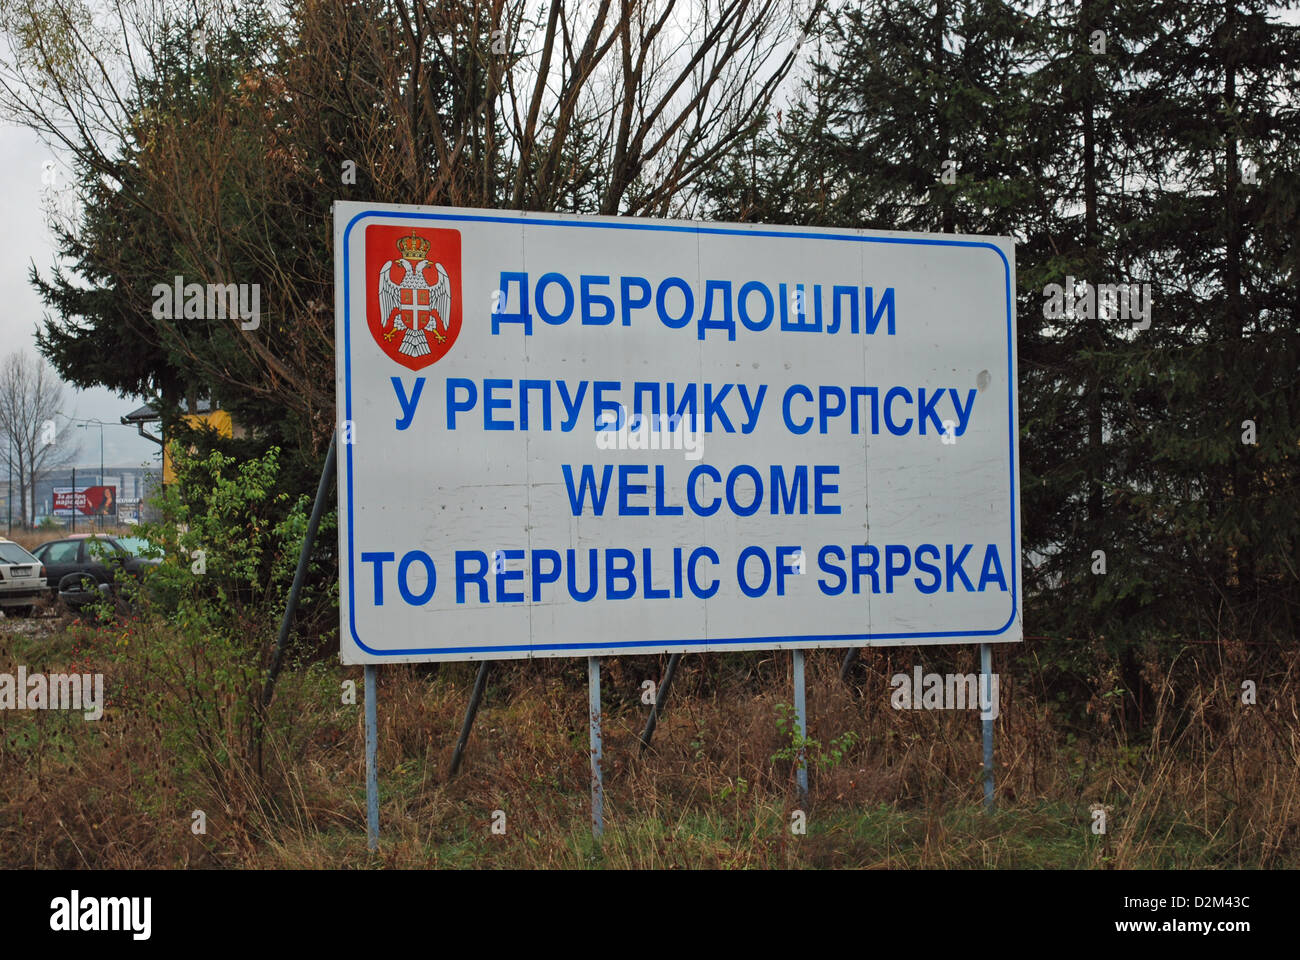 Panneau routier indiquant que vous avez maintenant dans la République de Srpska, une enclave serbe de Bosnie-Herzégovine. Banque D'Images